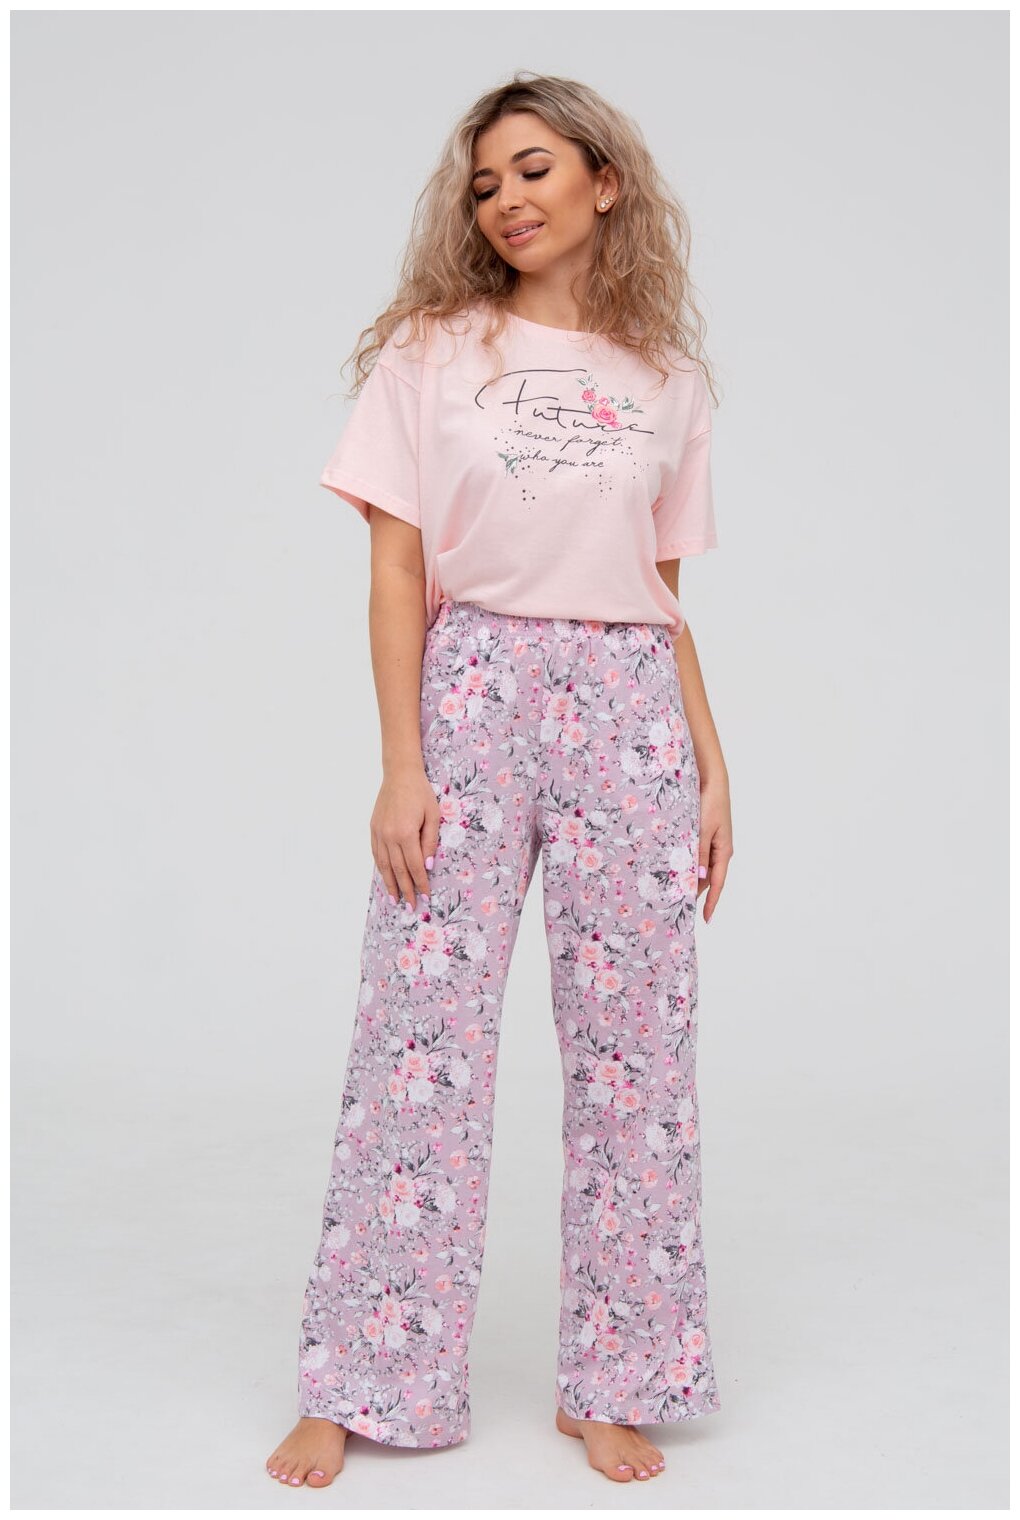 Пижама DIANIDA М-799 размеры 44-54 (50, Розовый) - фотография № 6